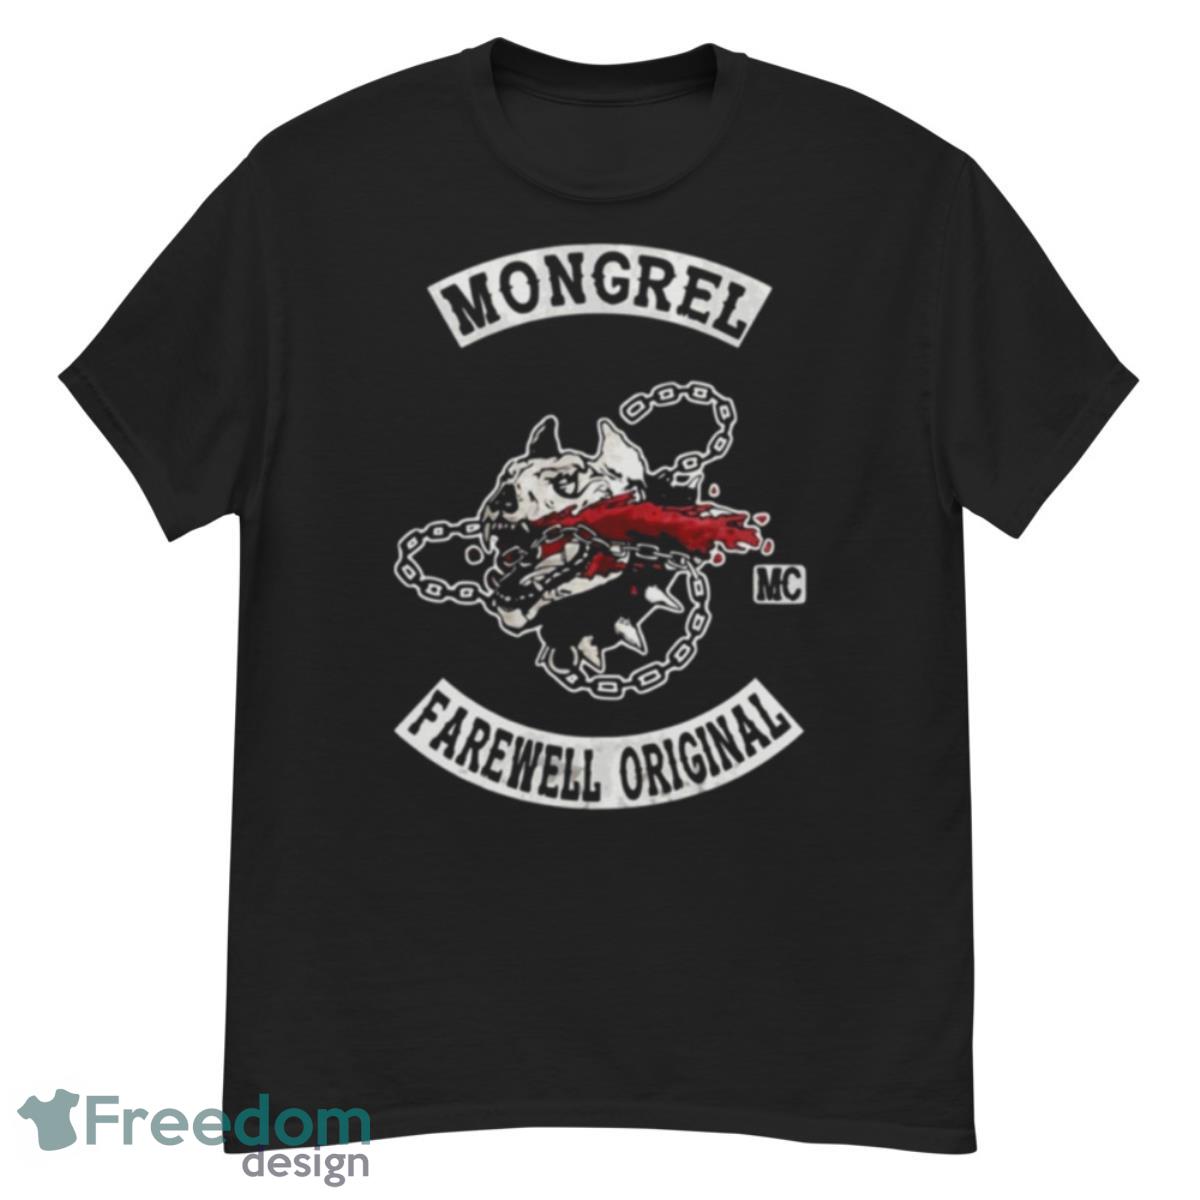 Days Gone Game Mongrel Farewell Original shirt - G500 Men’s Classic T-Shirt